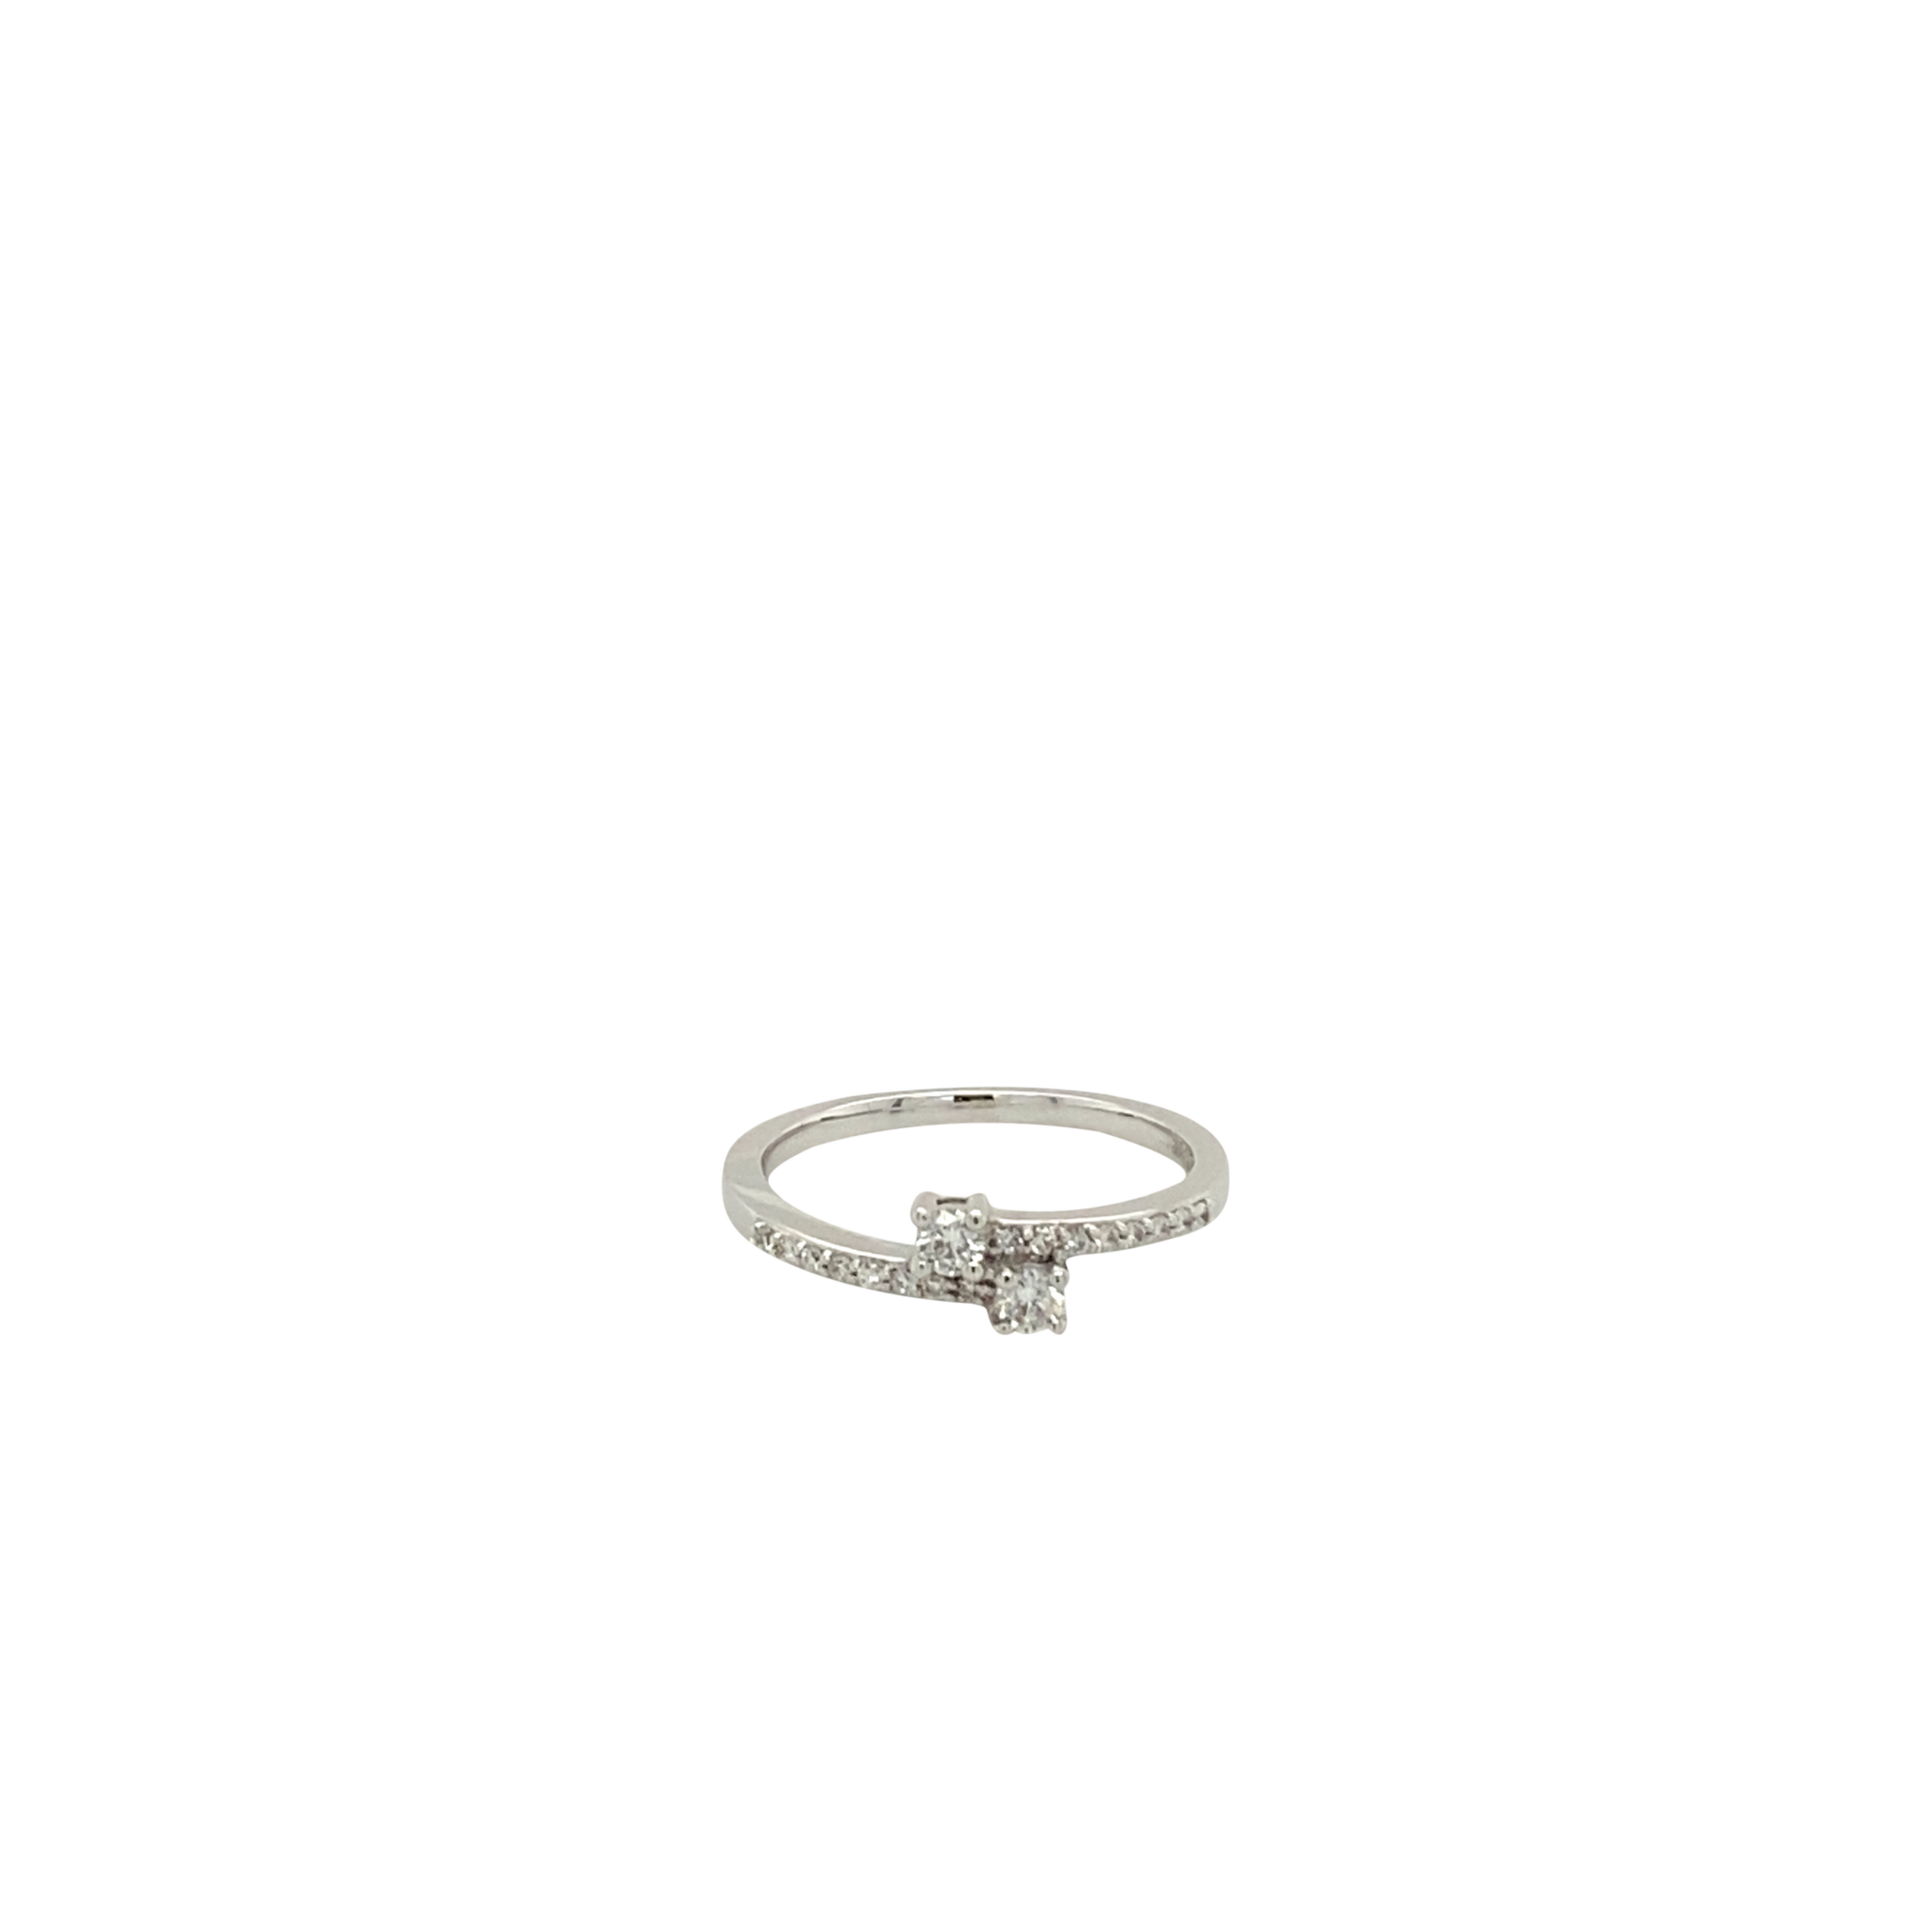 14 Karat White Gold Diamond Fashion Ring with Round Diamonds